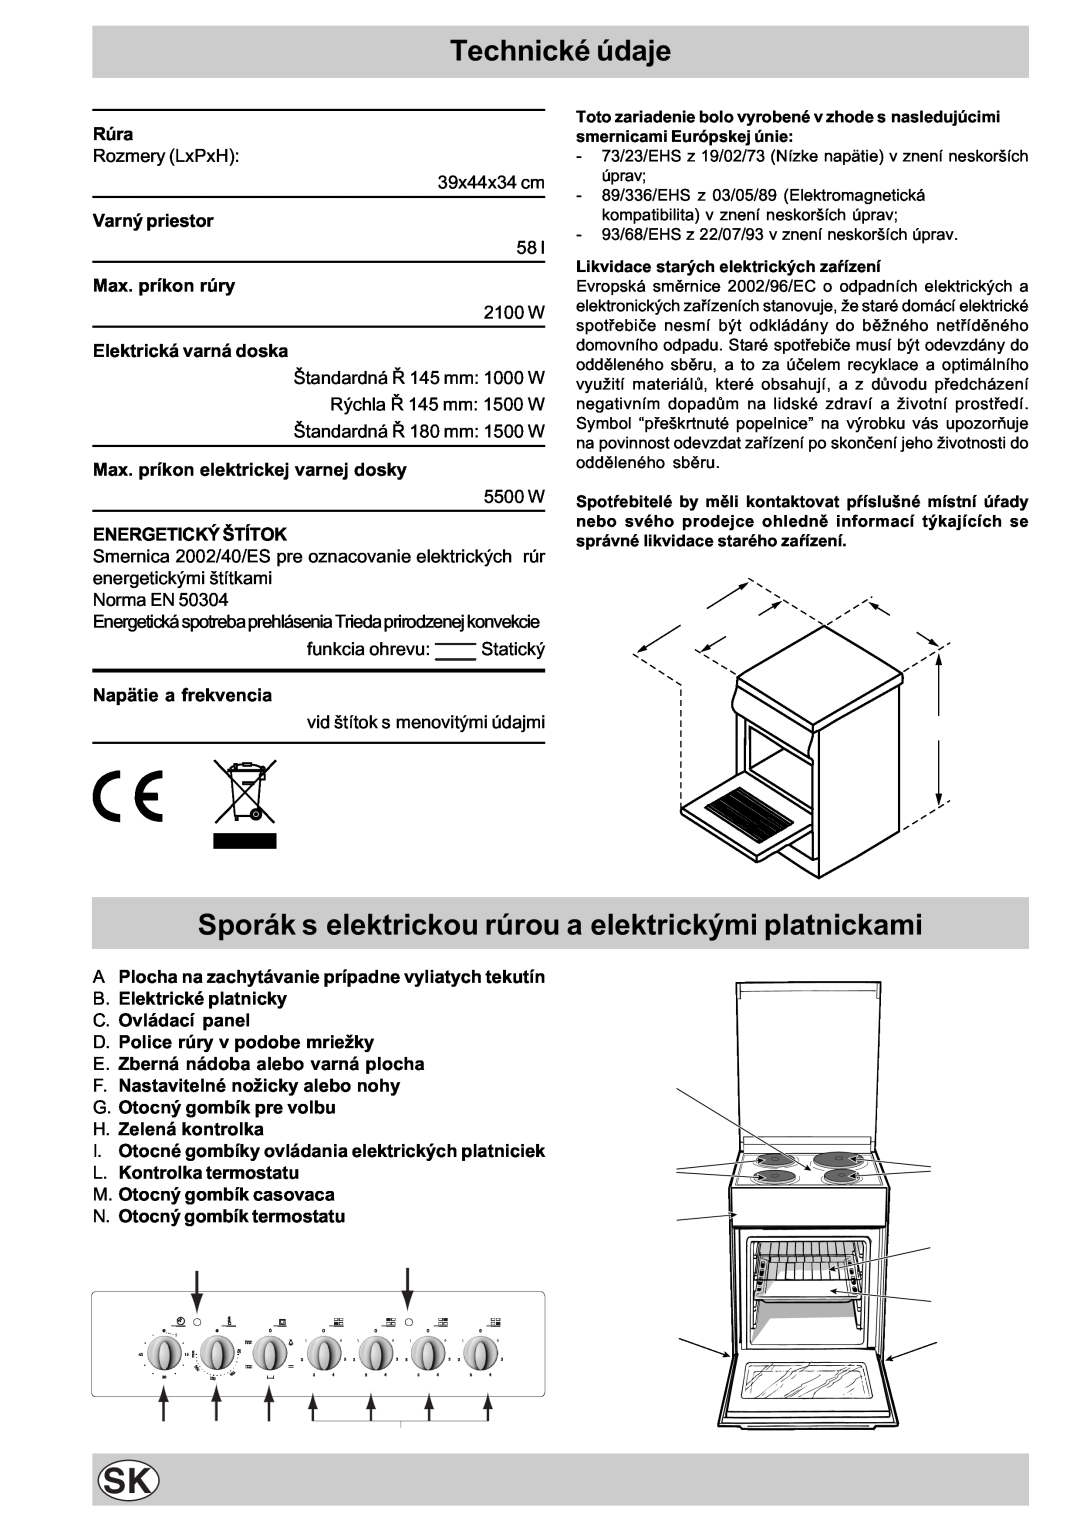 Indesit K3E11/R Sporák s elektrickou rúrou a elektrickými platnickami, Technické údaje, 104 60 85/90, M N Gi, A B B C 